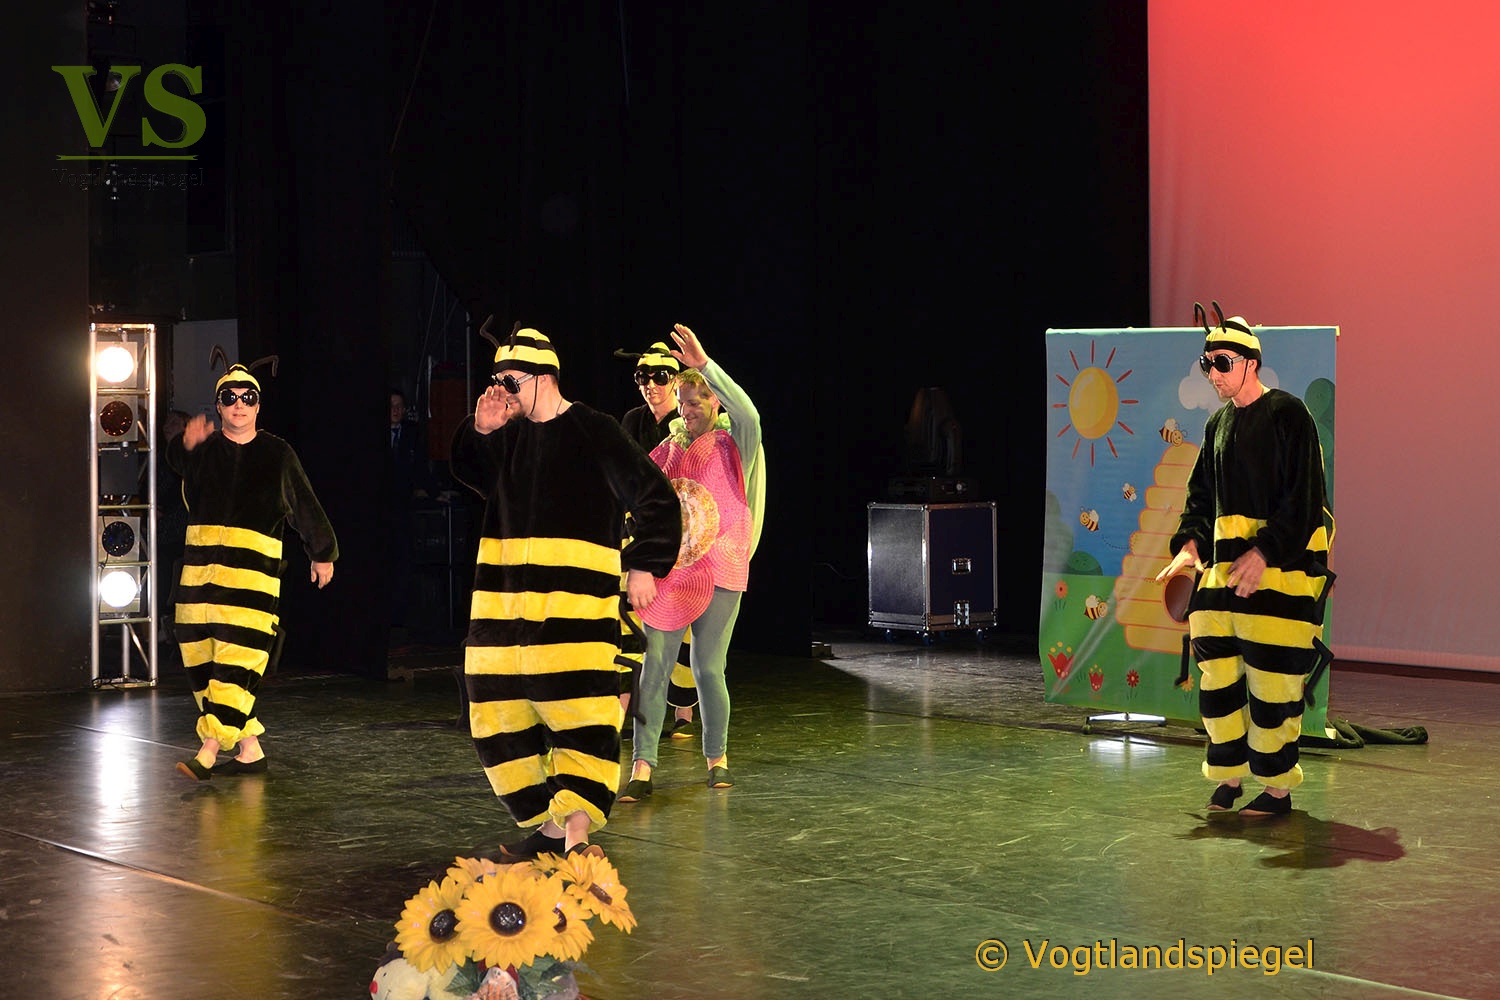 Vogtlandhalle Greiz: Kunterbunte Tanzsportwelt